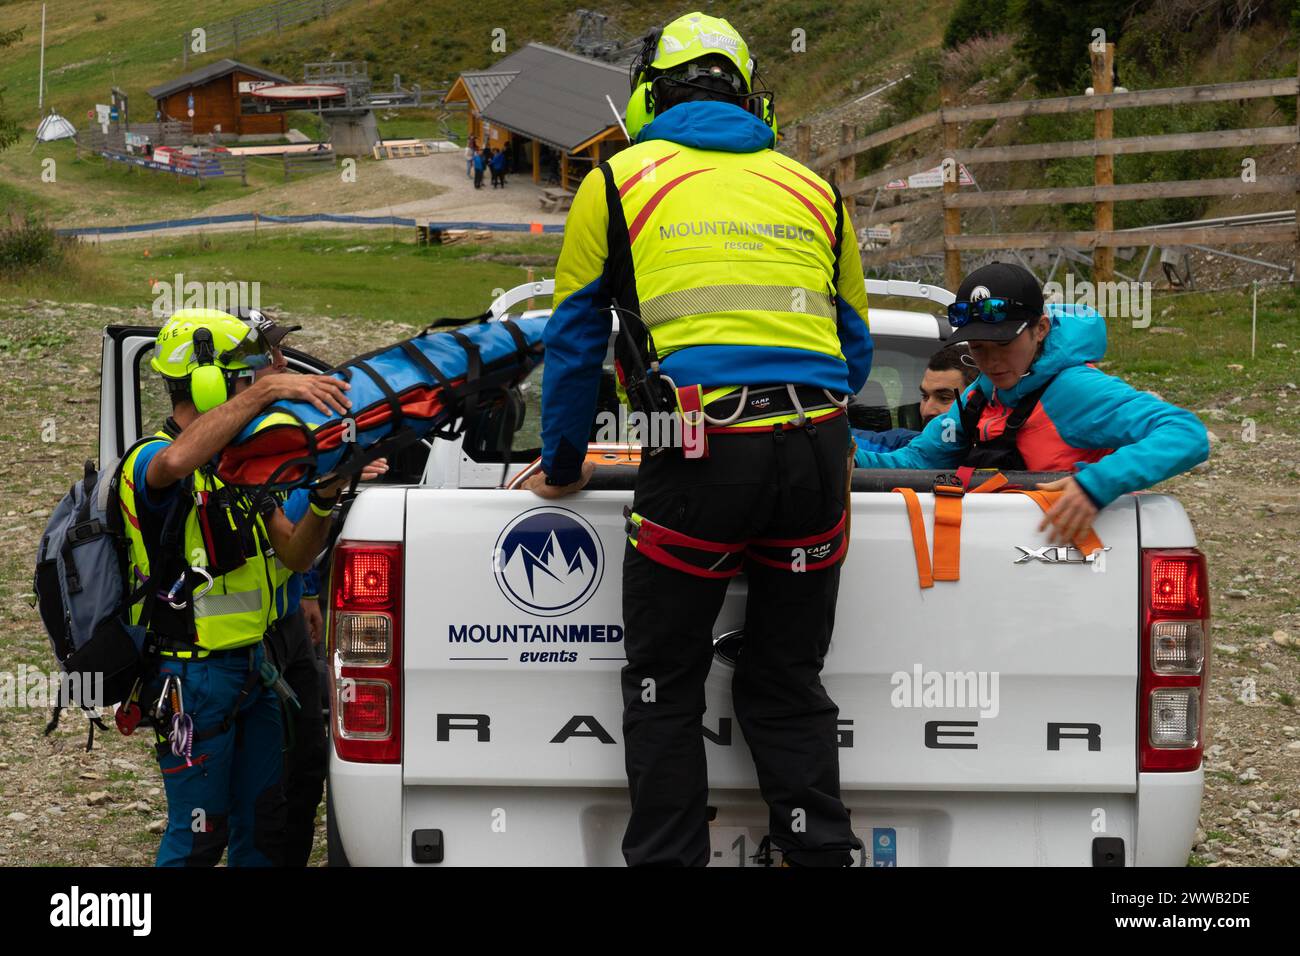 Rapporto su un dispositivo di salvataggio specializzato in difficile accesso alle montagne. I soccorritori saliranno a bordo di un elicottero per salvare un uomo ferito. Foto Stock